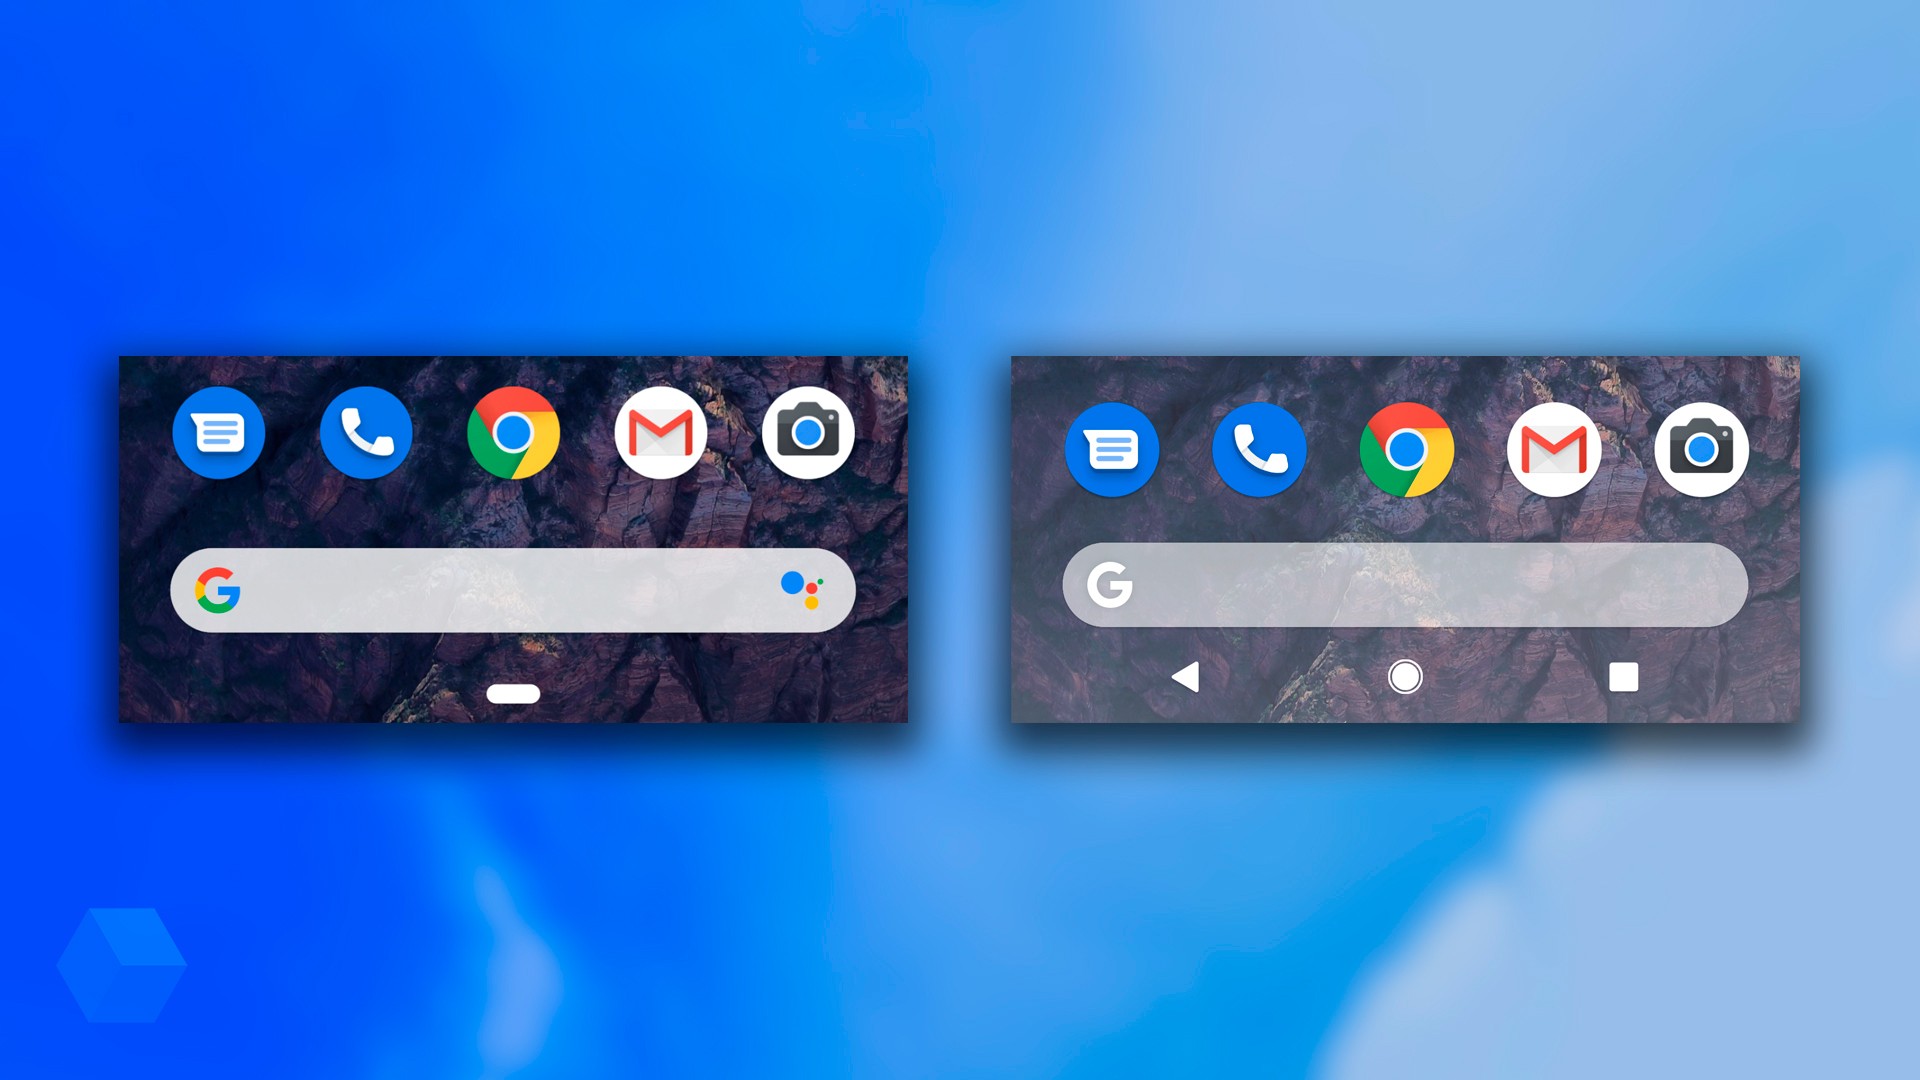 Как вернуть вертикальное меню многозадачности в Google Pixel 3?